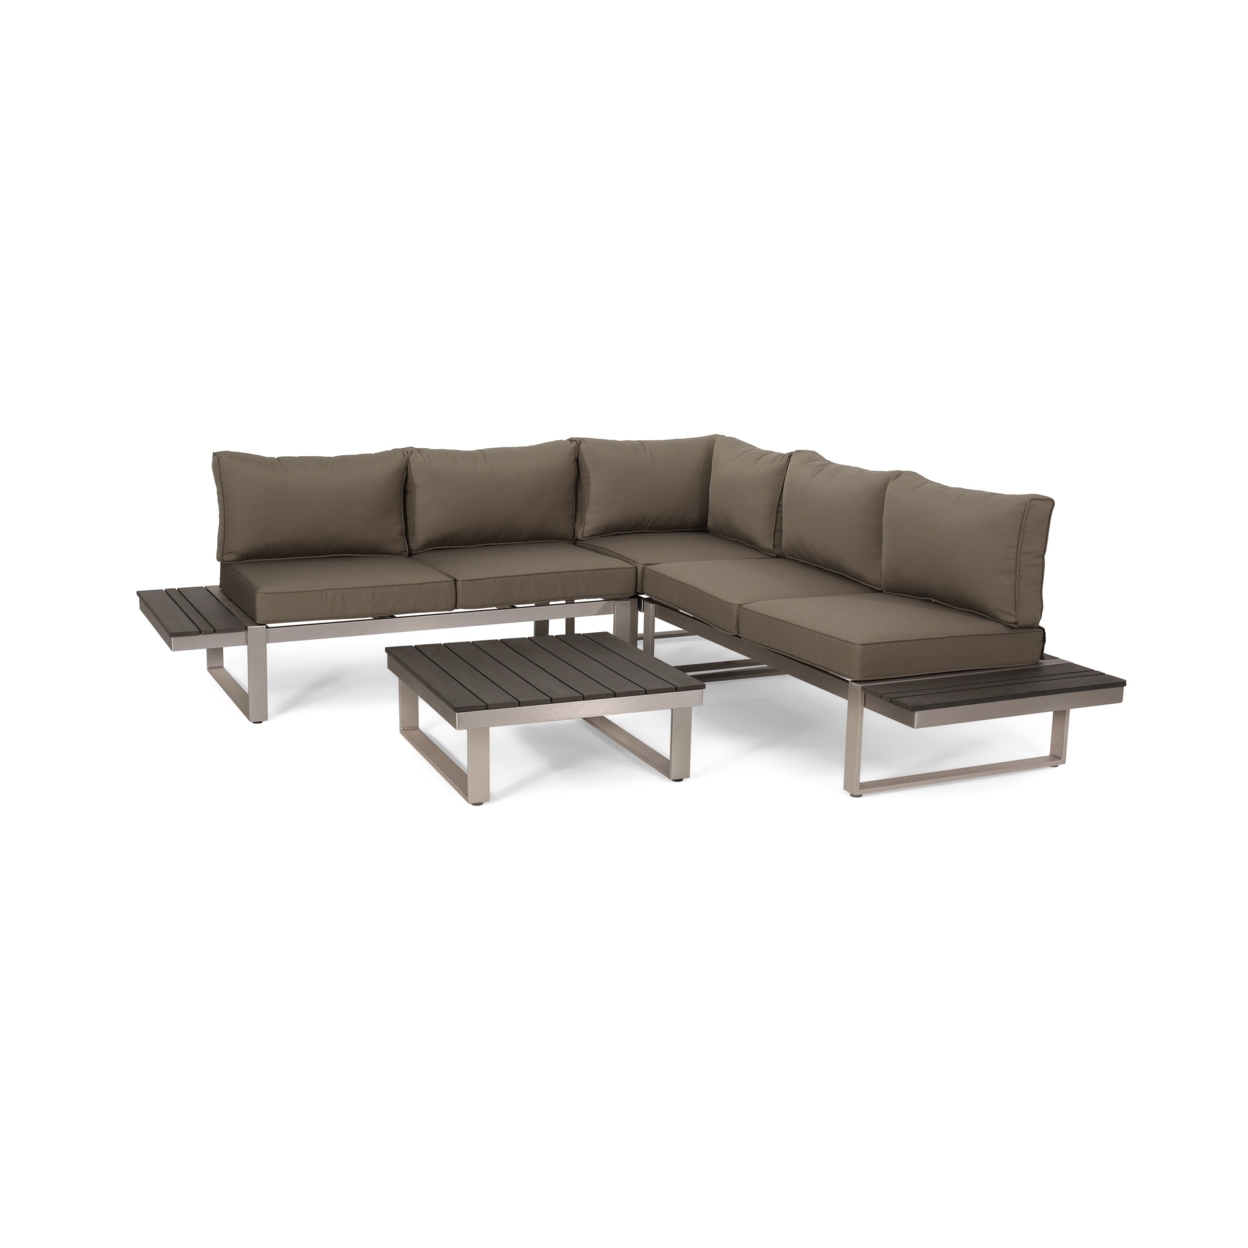 Johana Outdoor Aluminum V-Shaped 5 Seater Sofa Set With Cushions - Gray/khaki